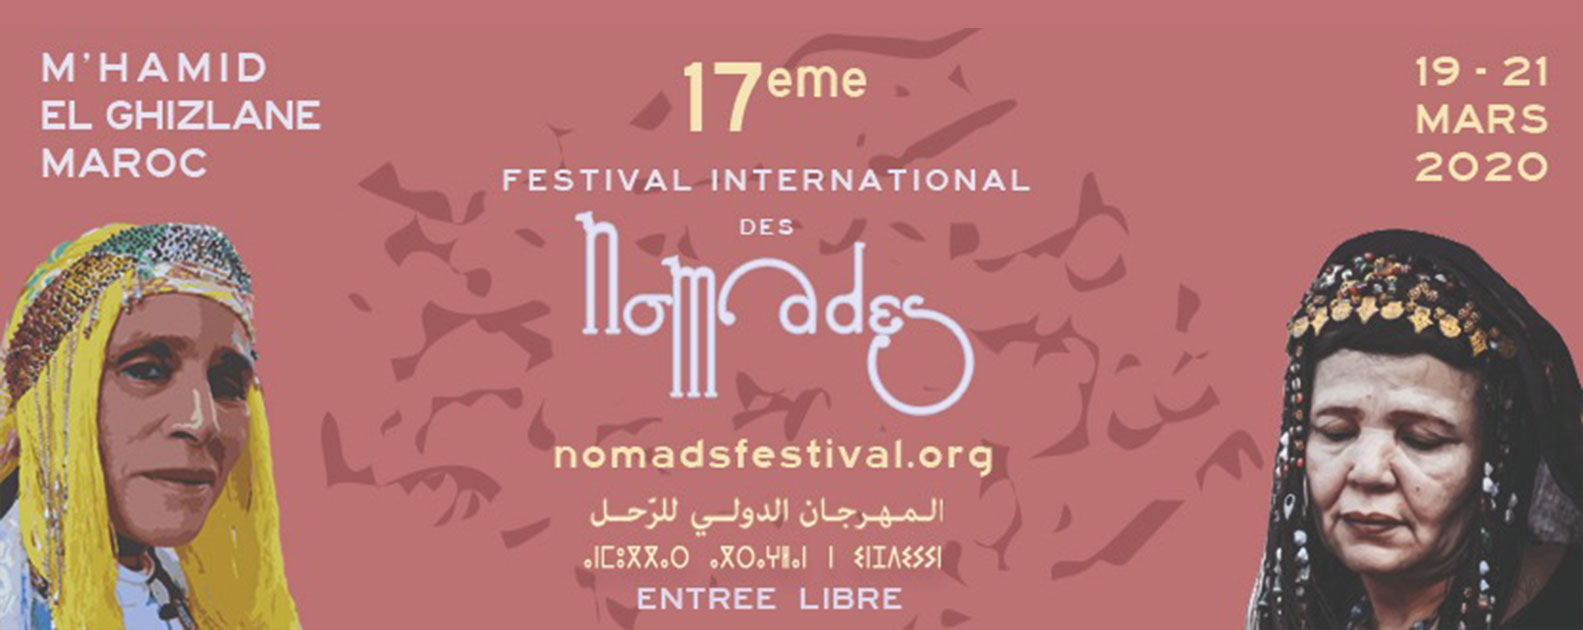 Internationaal Nomad Festival